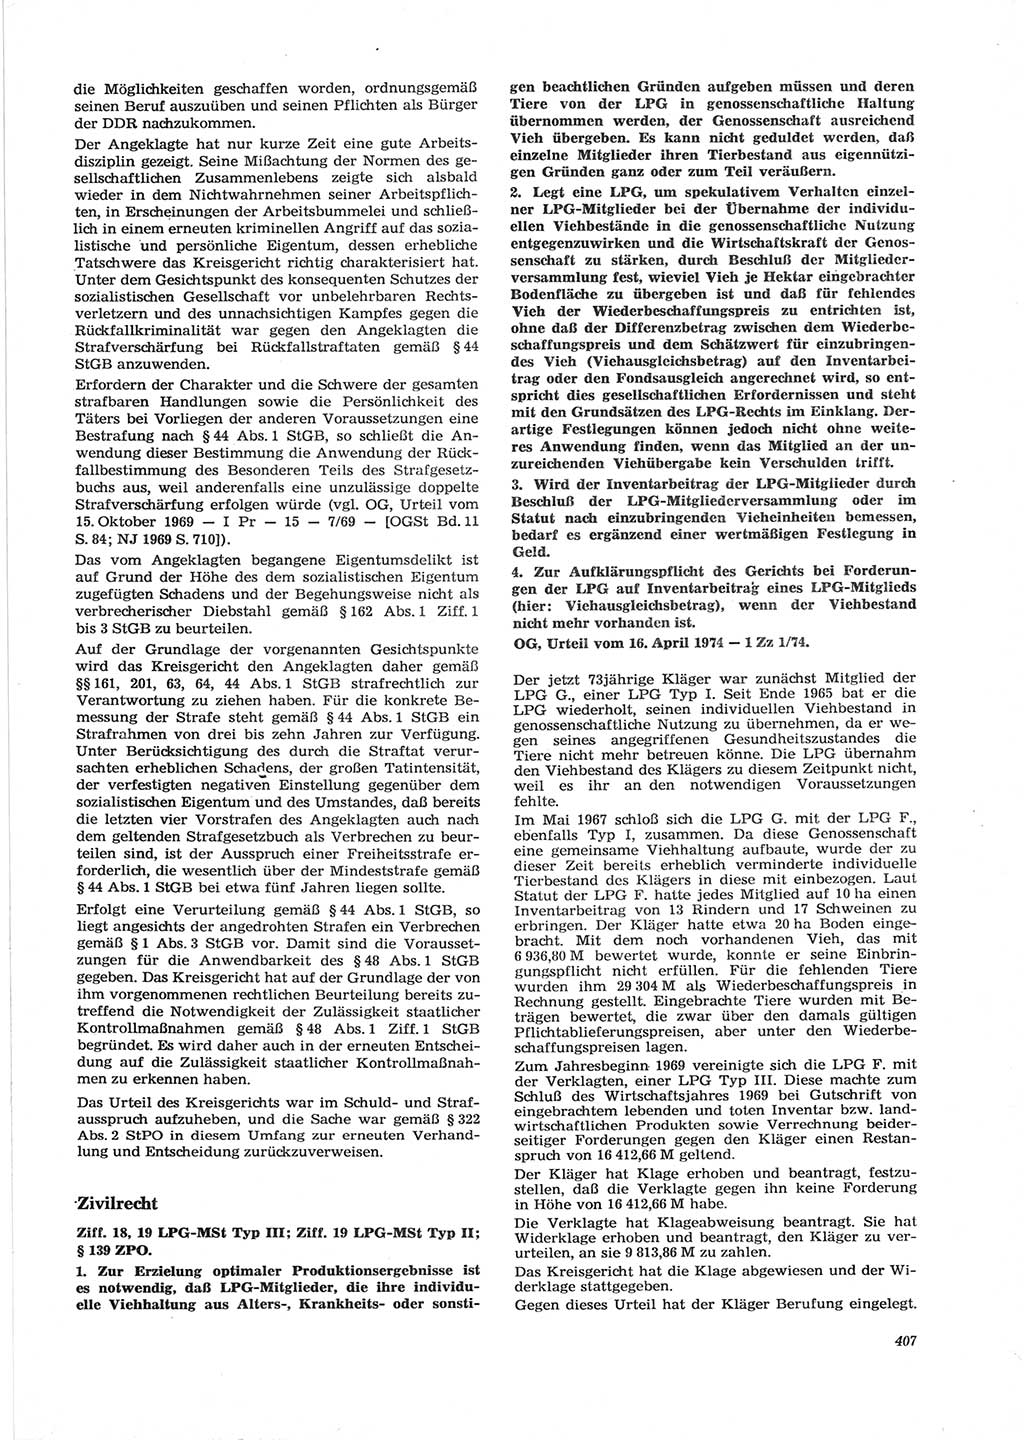 Neue Justiz (NJ), Zeitschrift für Recht und Rechtswissenschaft [Deutsche Demokratische Republik (DDR)], 28. Jahrgang 1974, Seite 407 (NJ DDR 1974, S. 407)